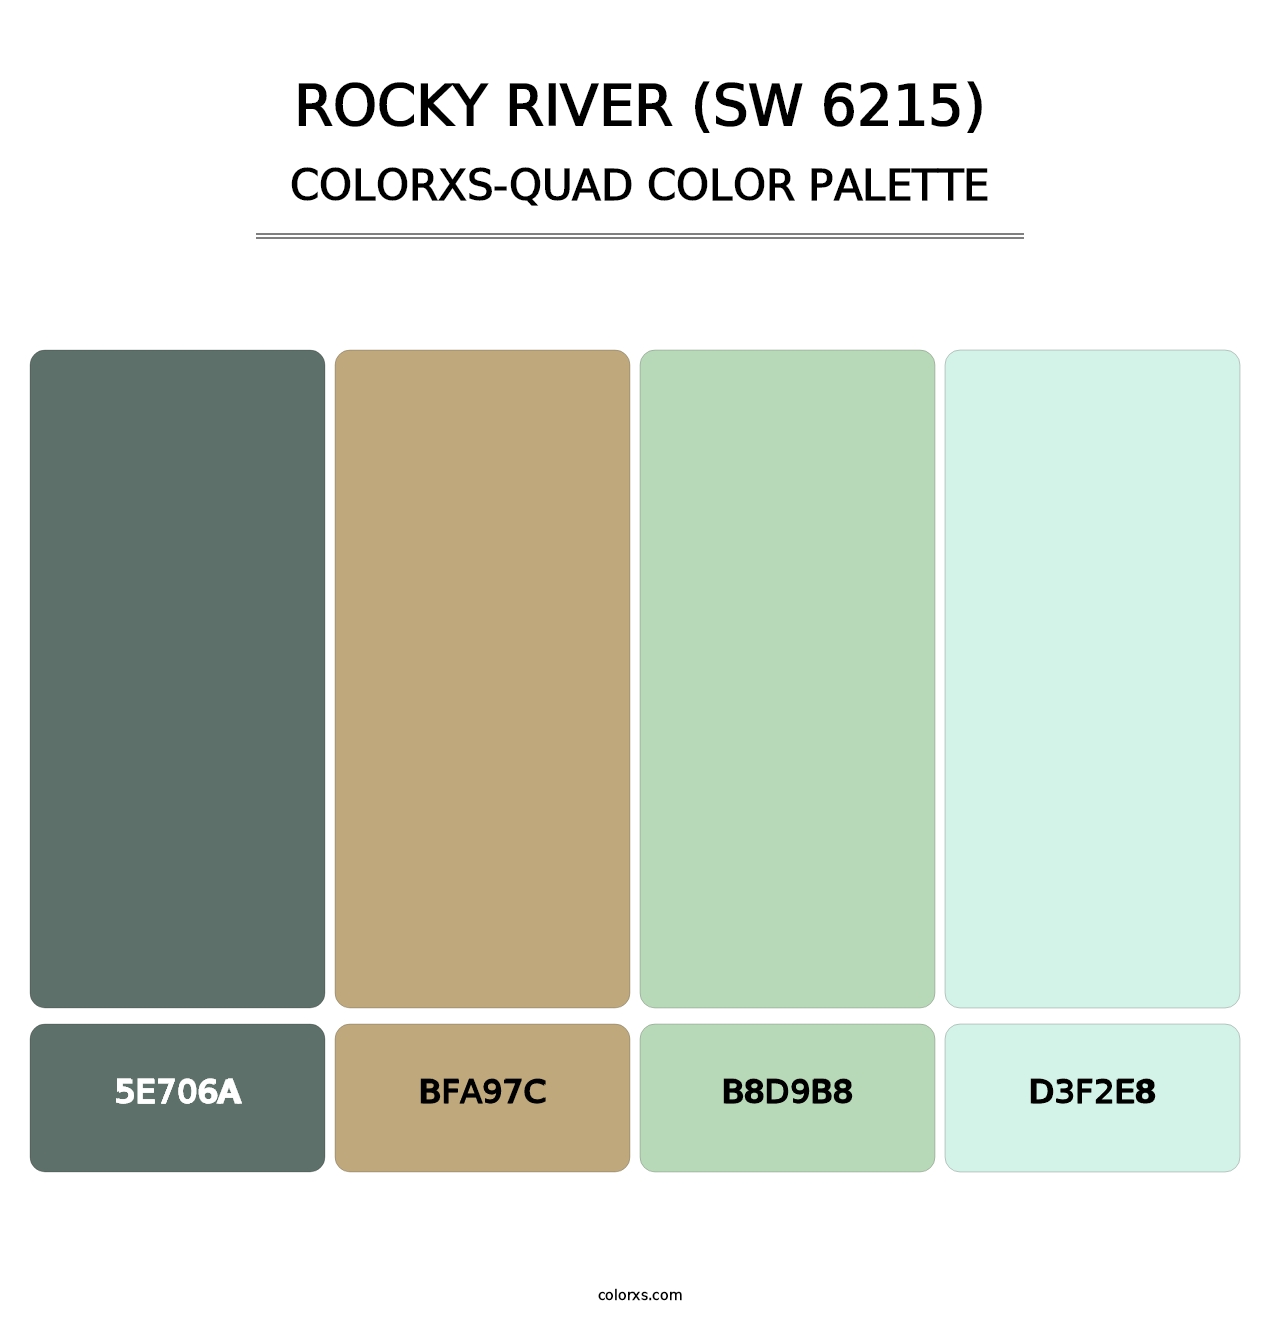 Rocky River (SW 6215) - Colorxs Quad Palette